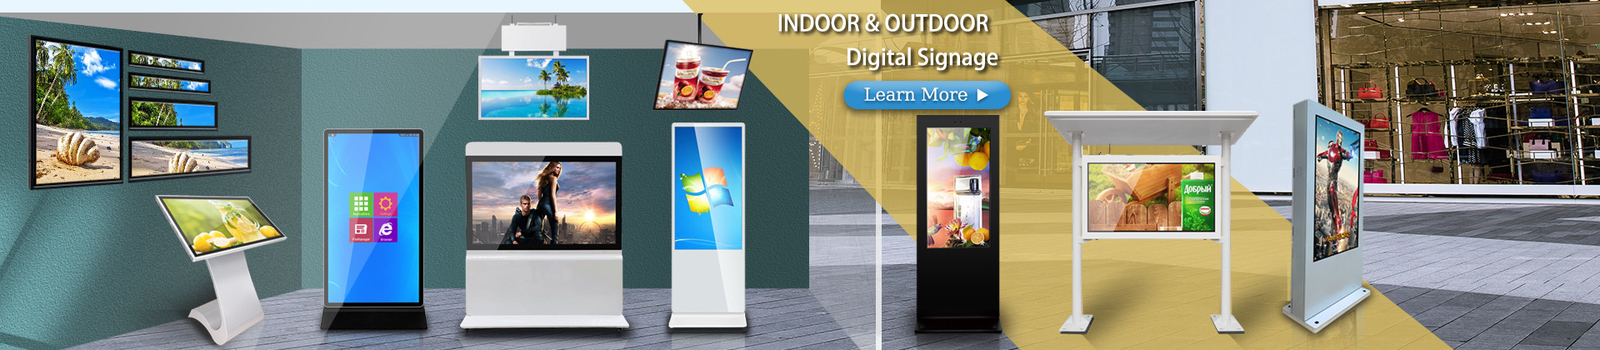 Υπαίθριο ψηφιακό σύστημα σηματοδότησης LCD